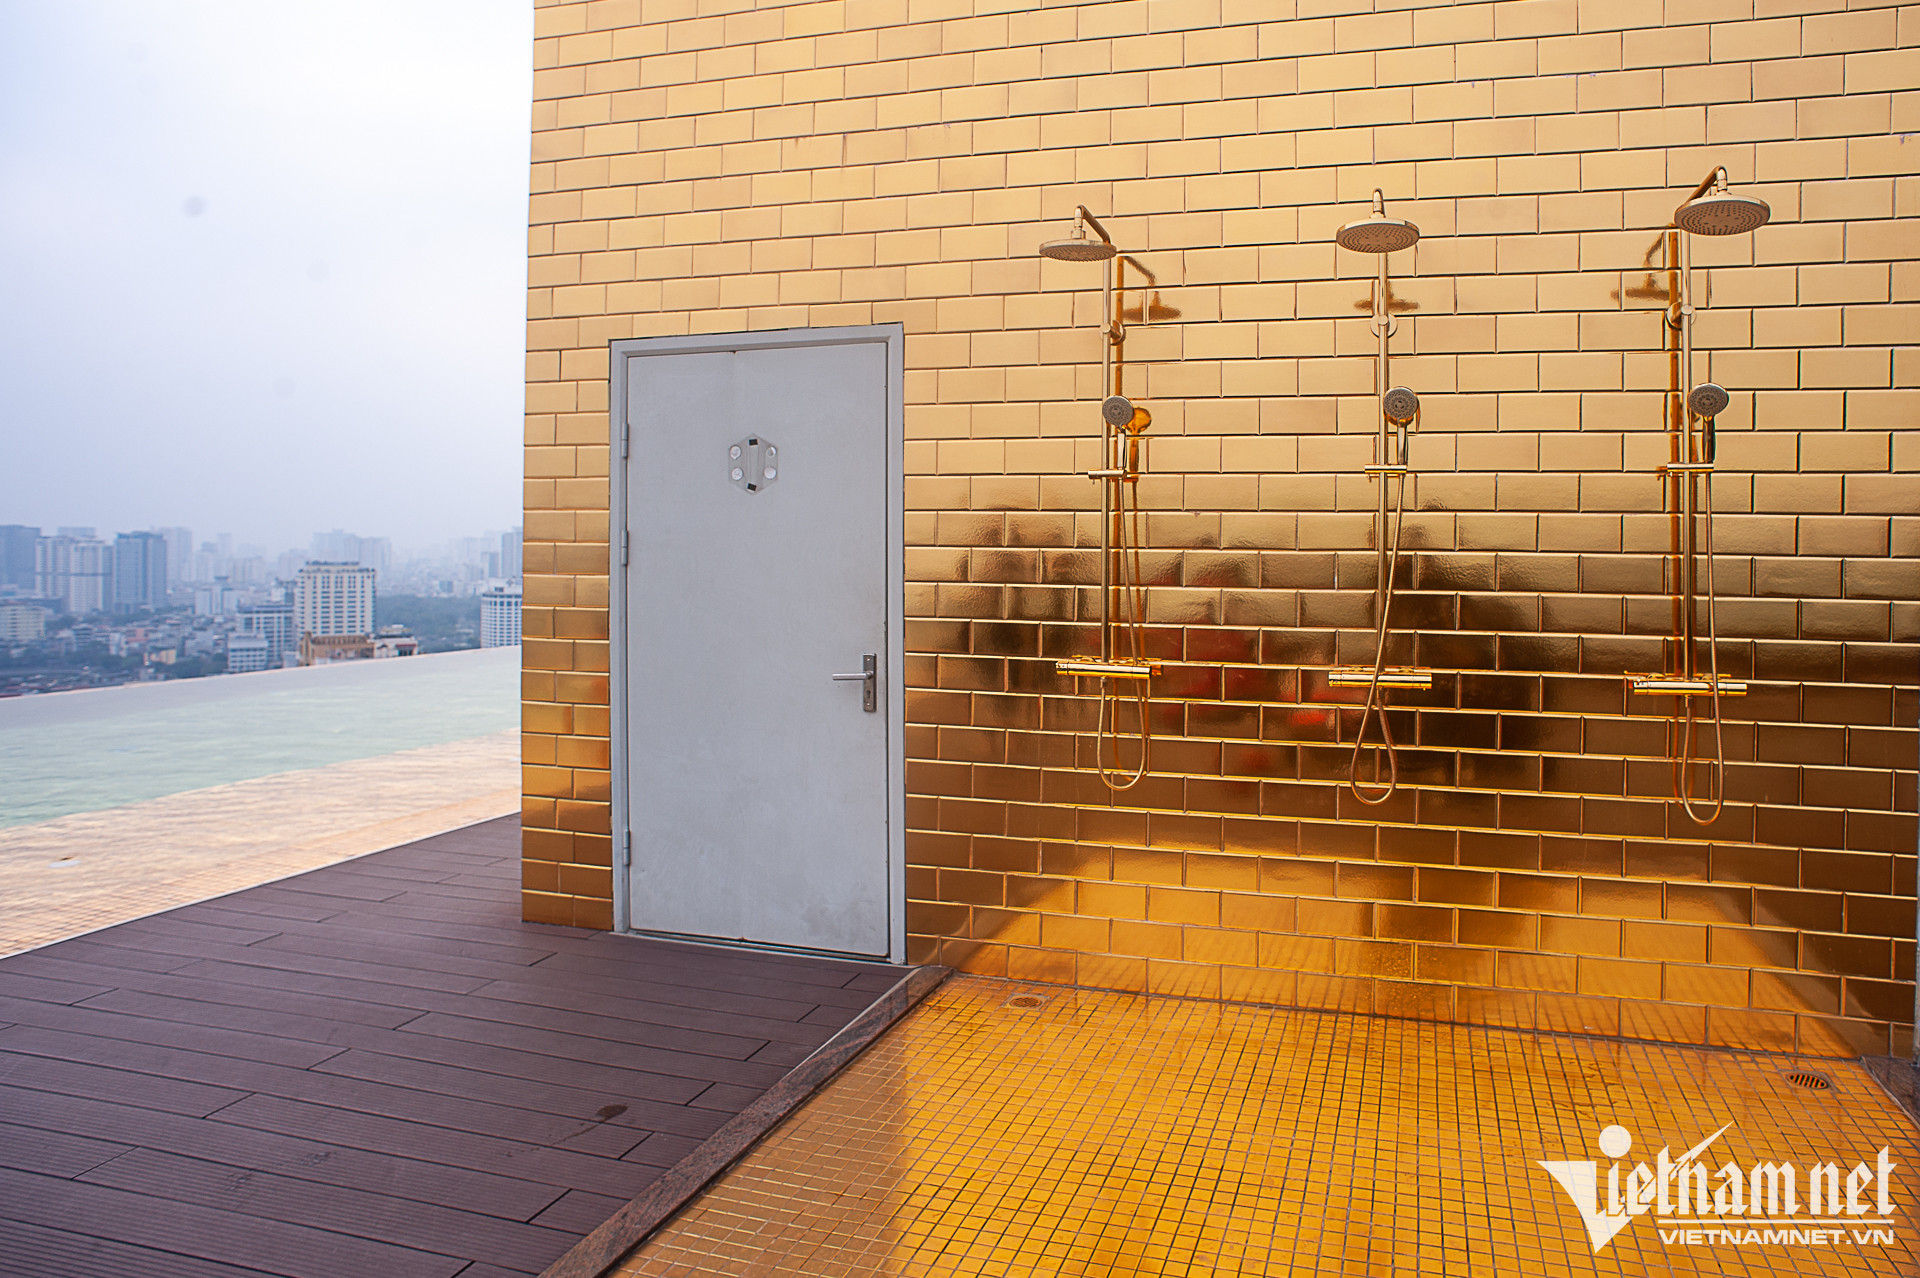 Bên trong khách sạn dát vàng cả bể bơi, toilet được rao bán 6000 tỷ đồng - Ảnh 12.